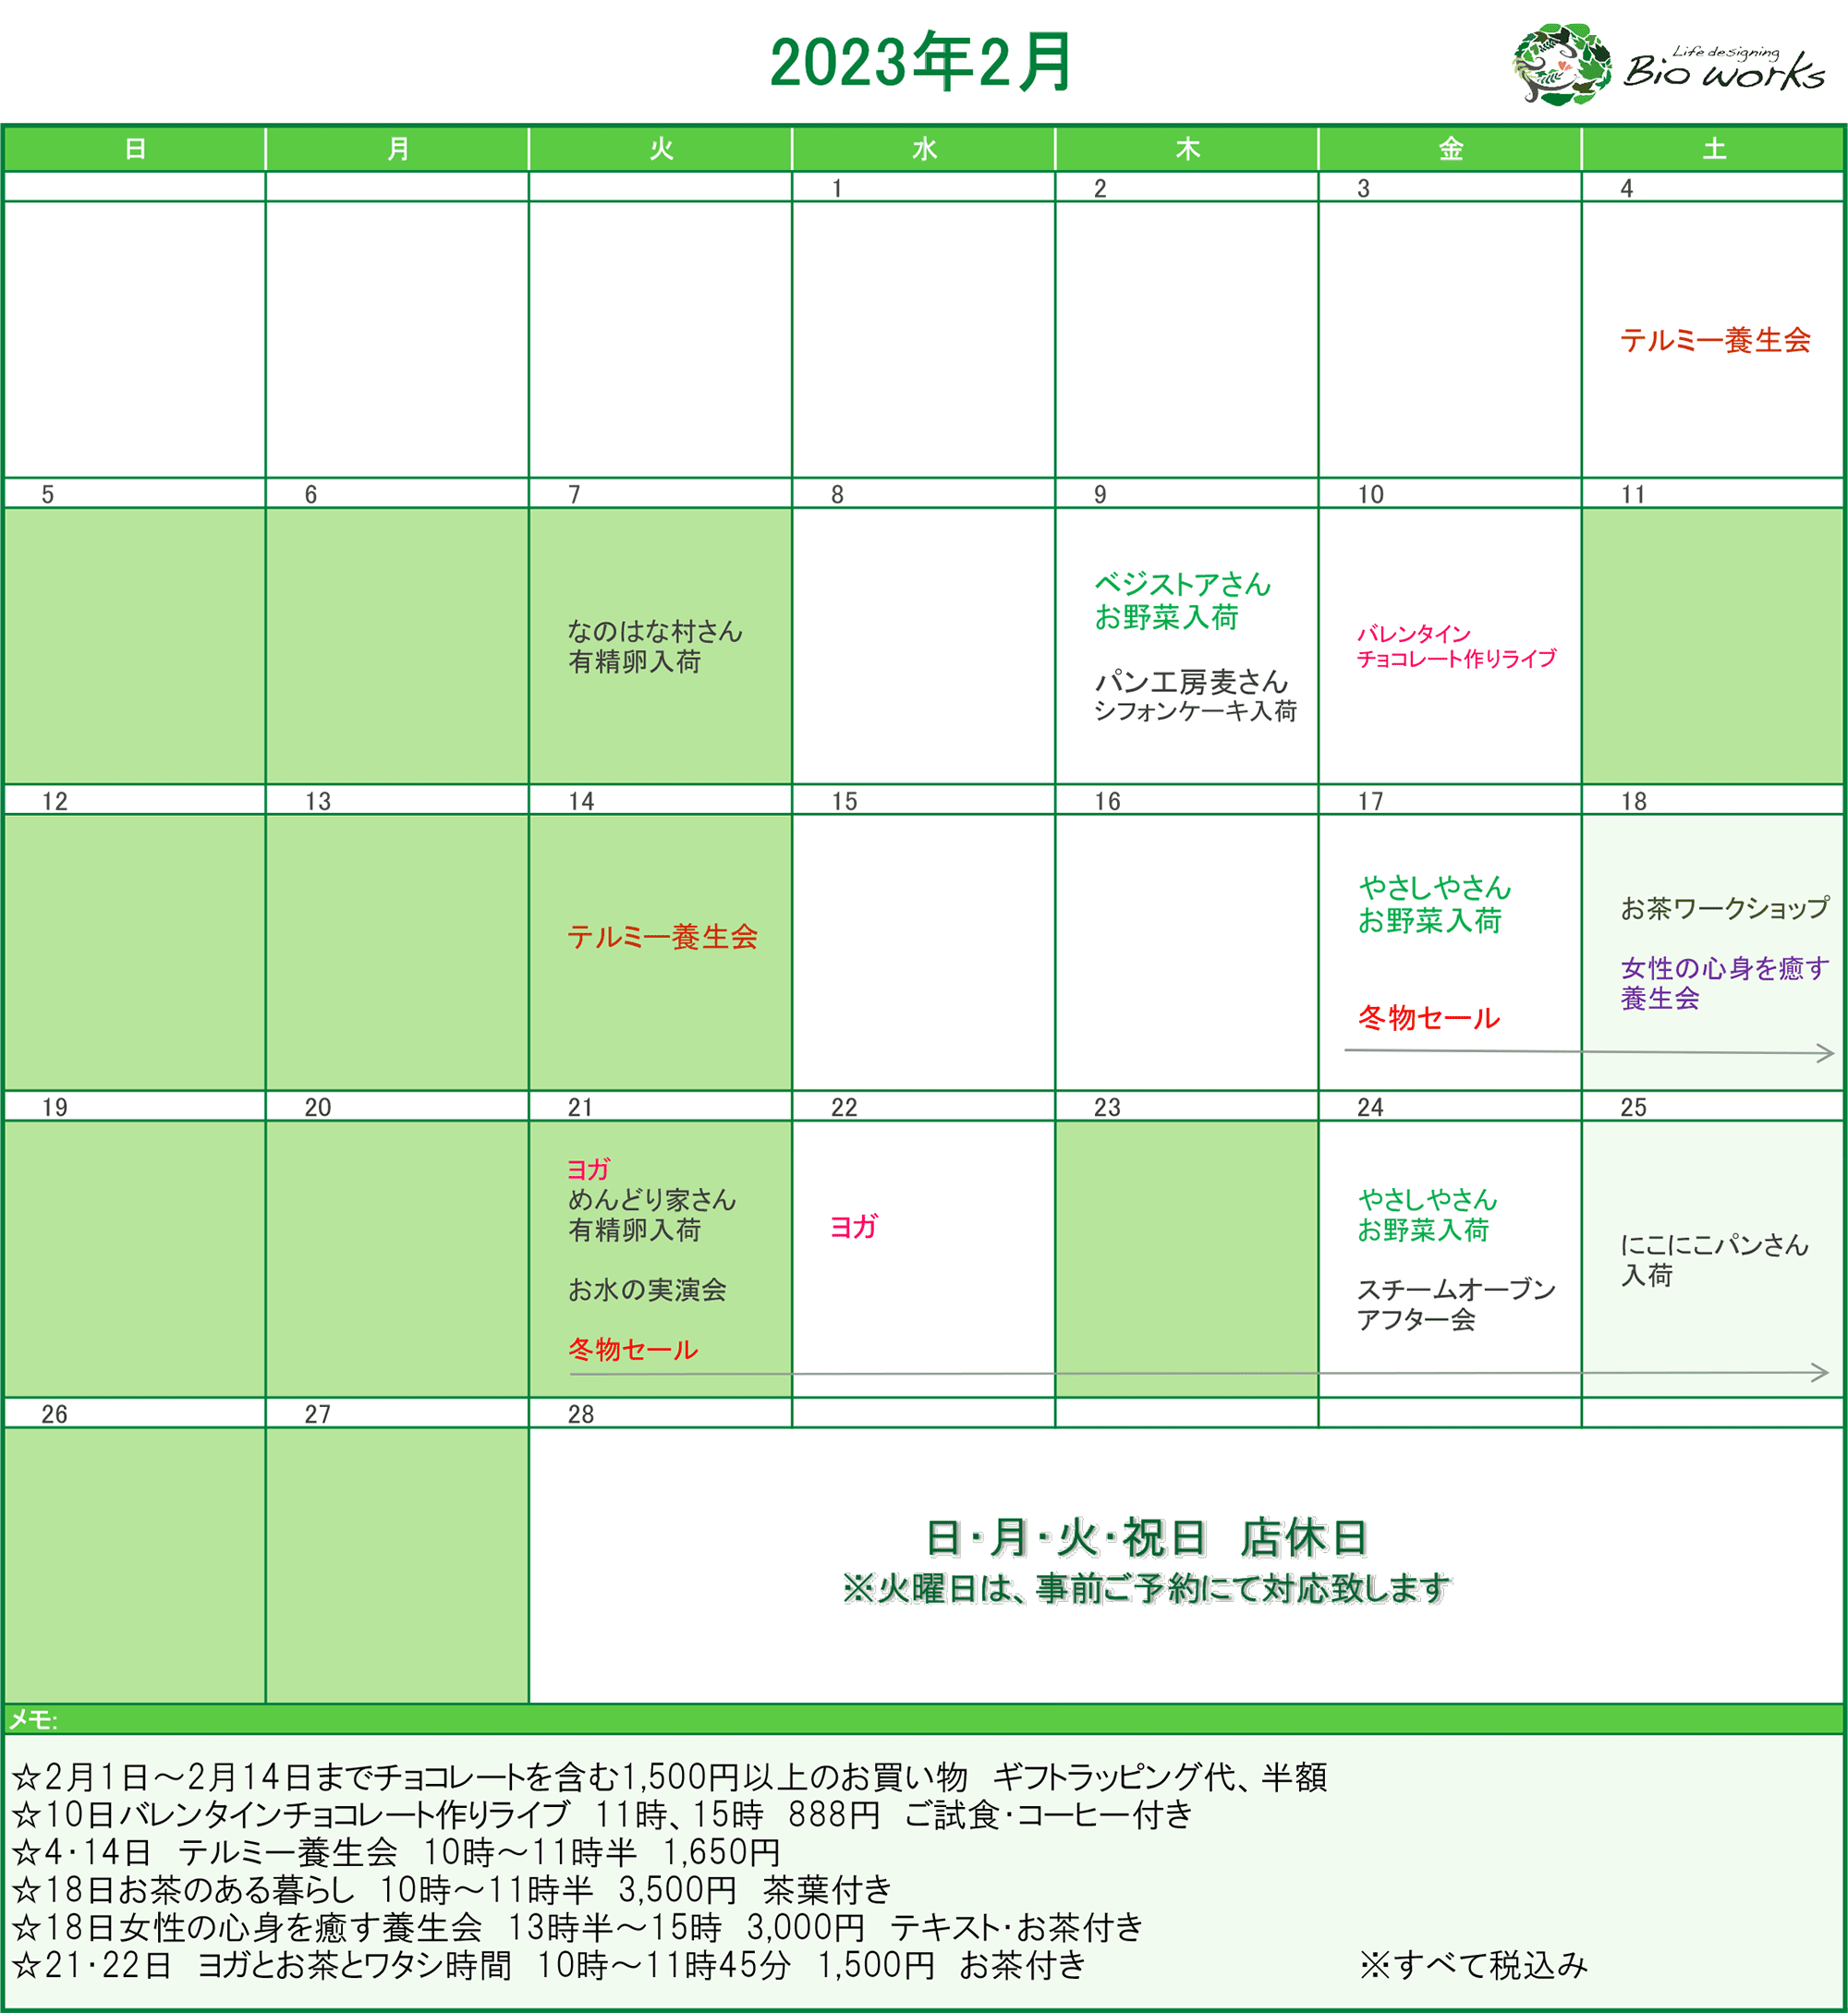 2023年2月のイベントカレンダー